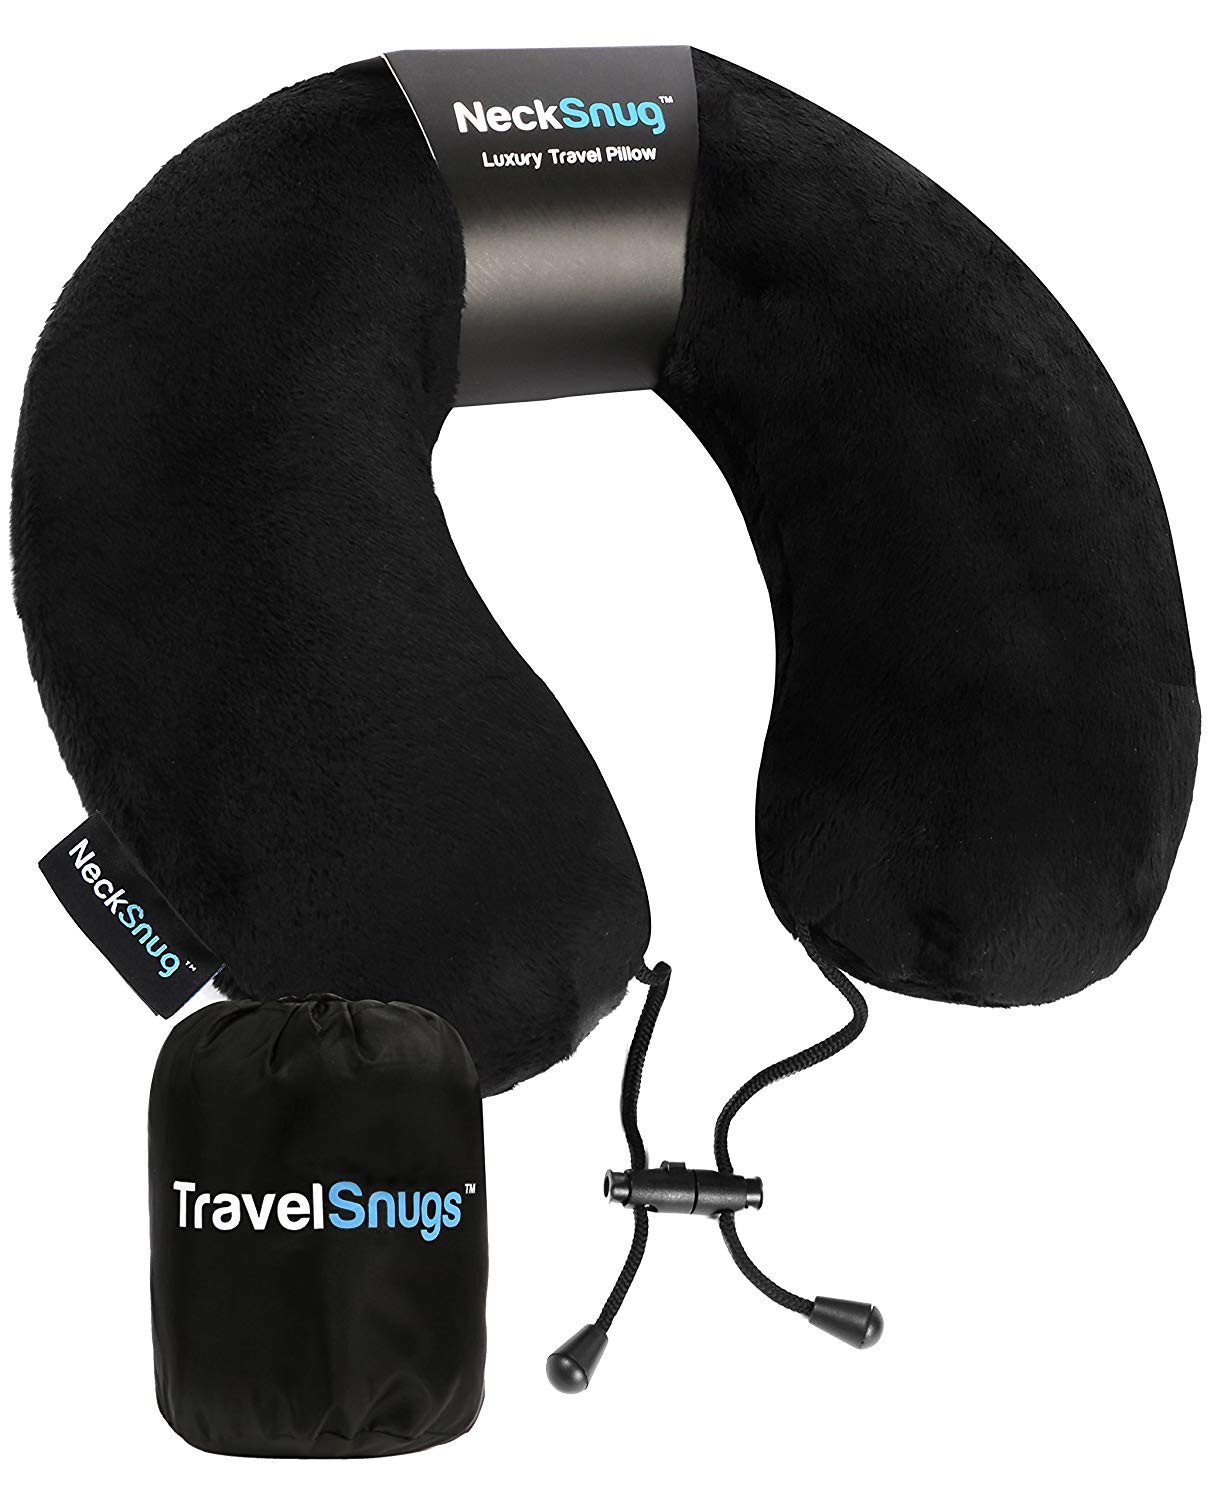 NeckSnug - Luxury Travel Pillow 